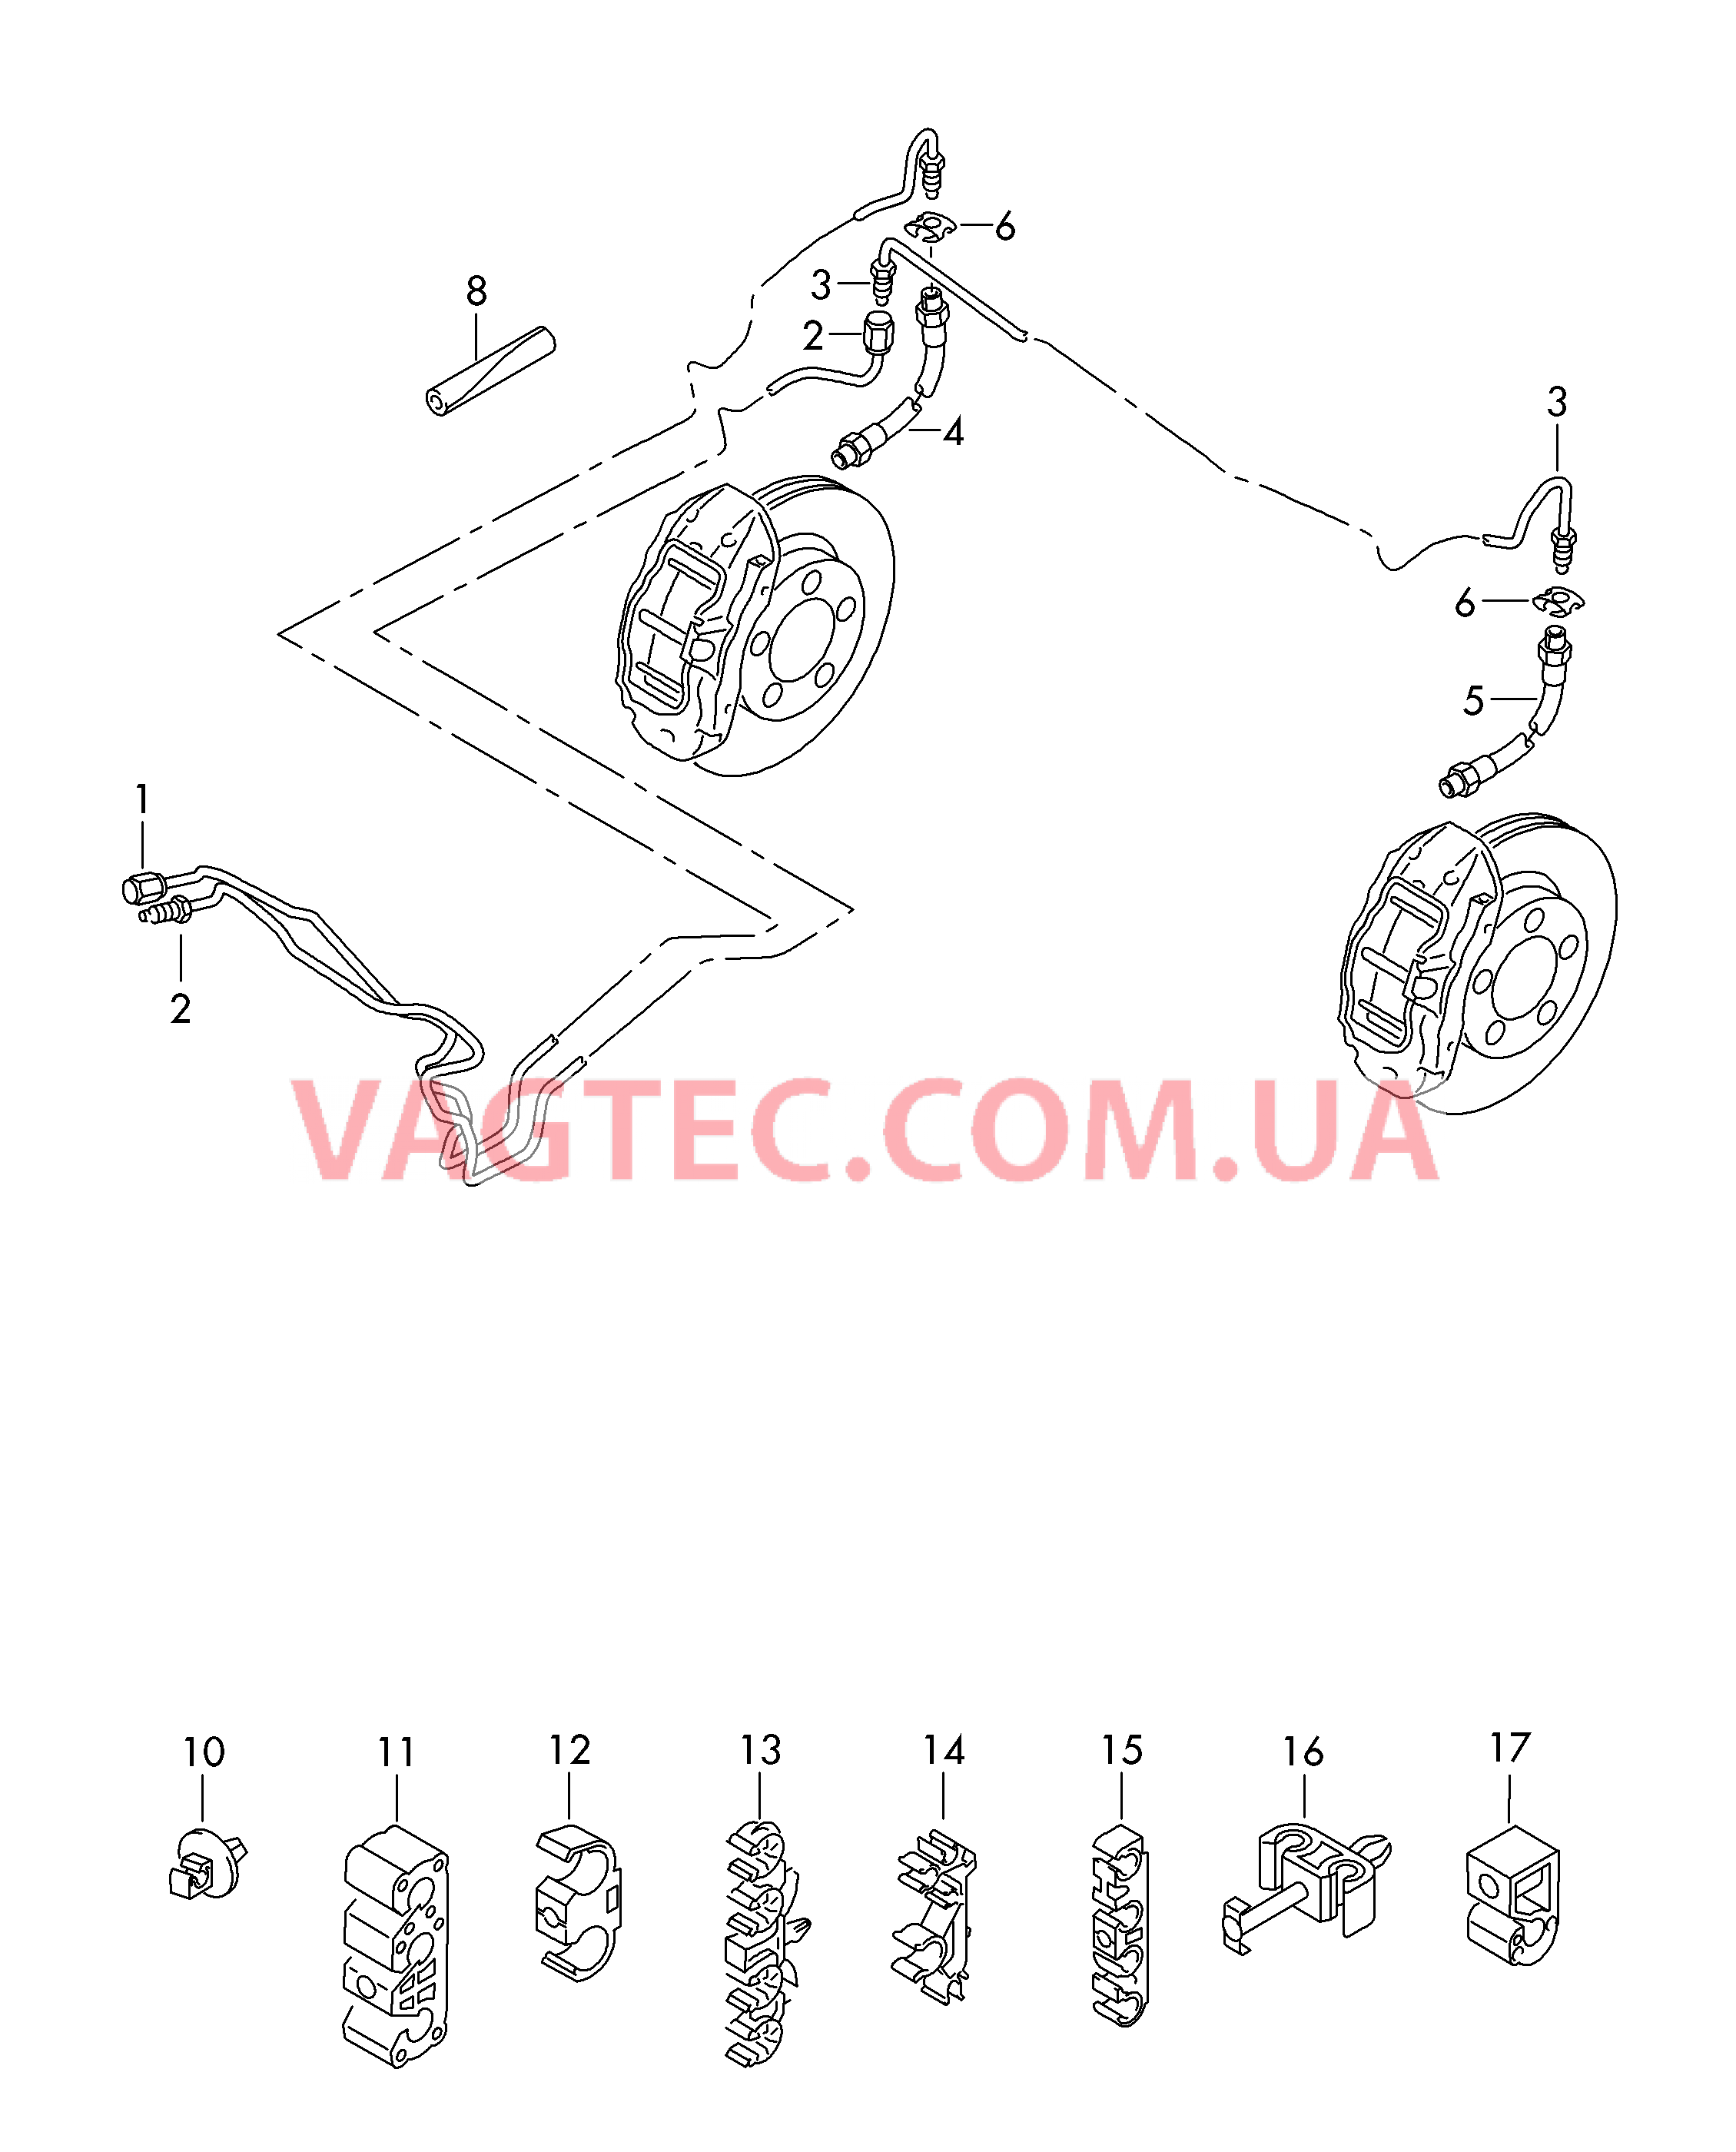 Тормозная трубка Тормозной шланг  для VOLKSWAGEN Touareg 2018